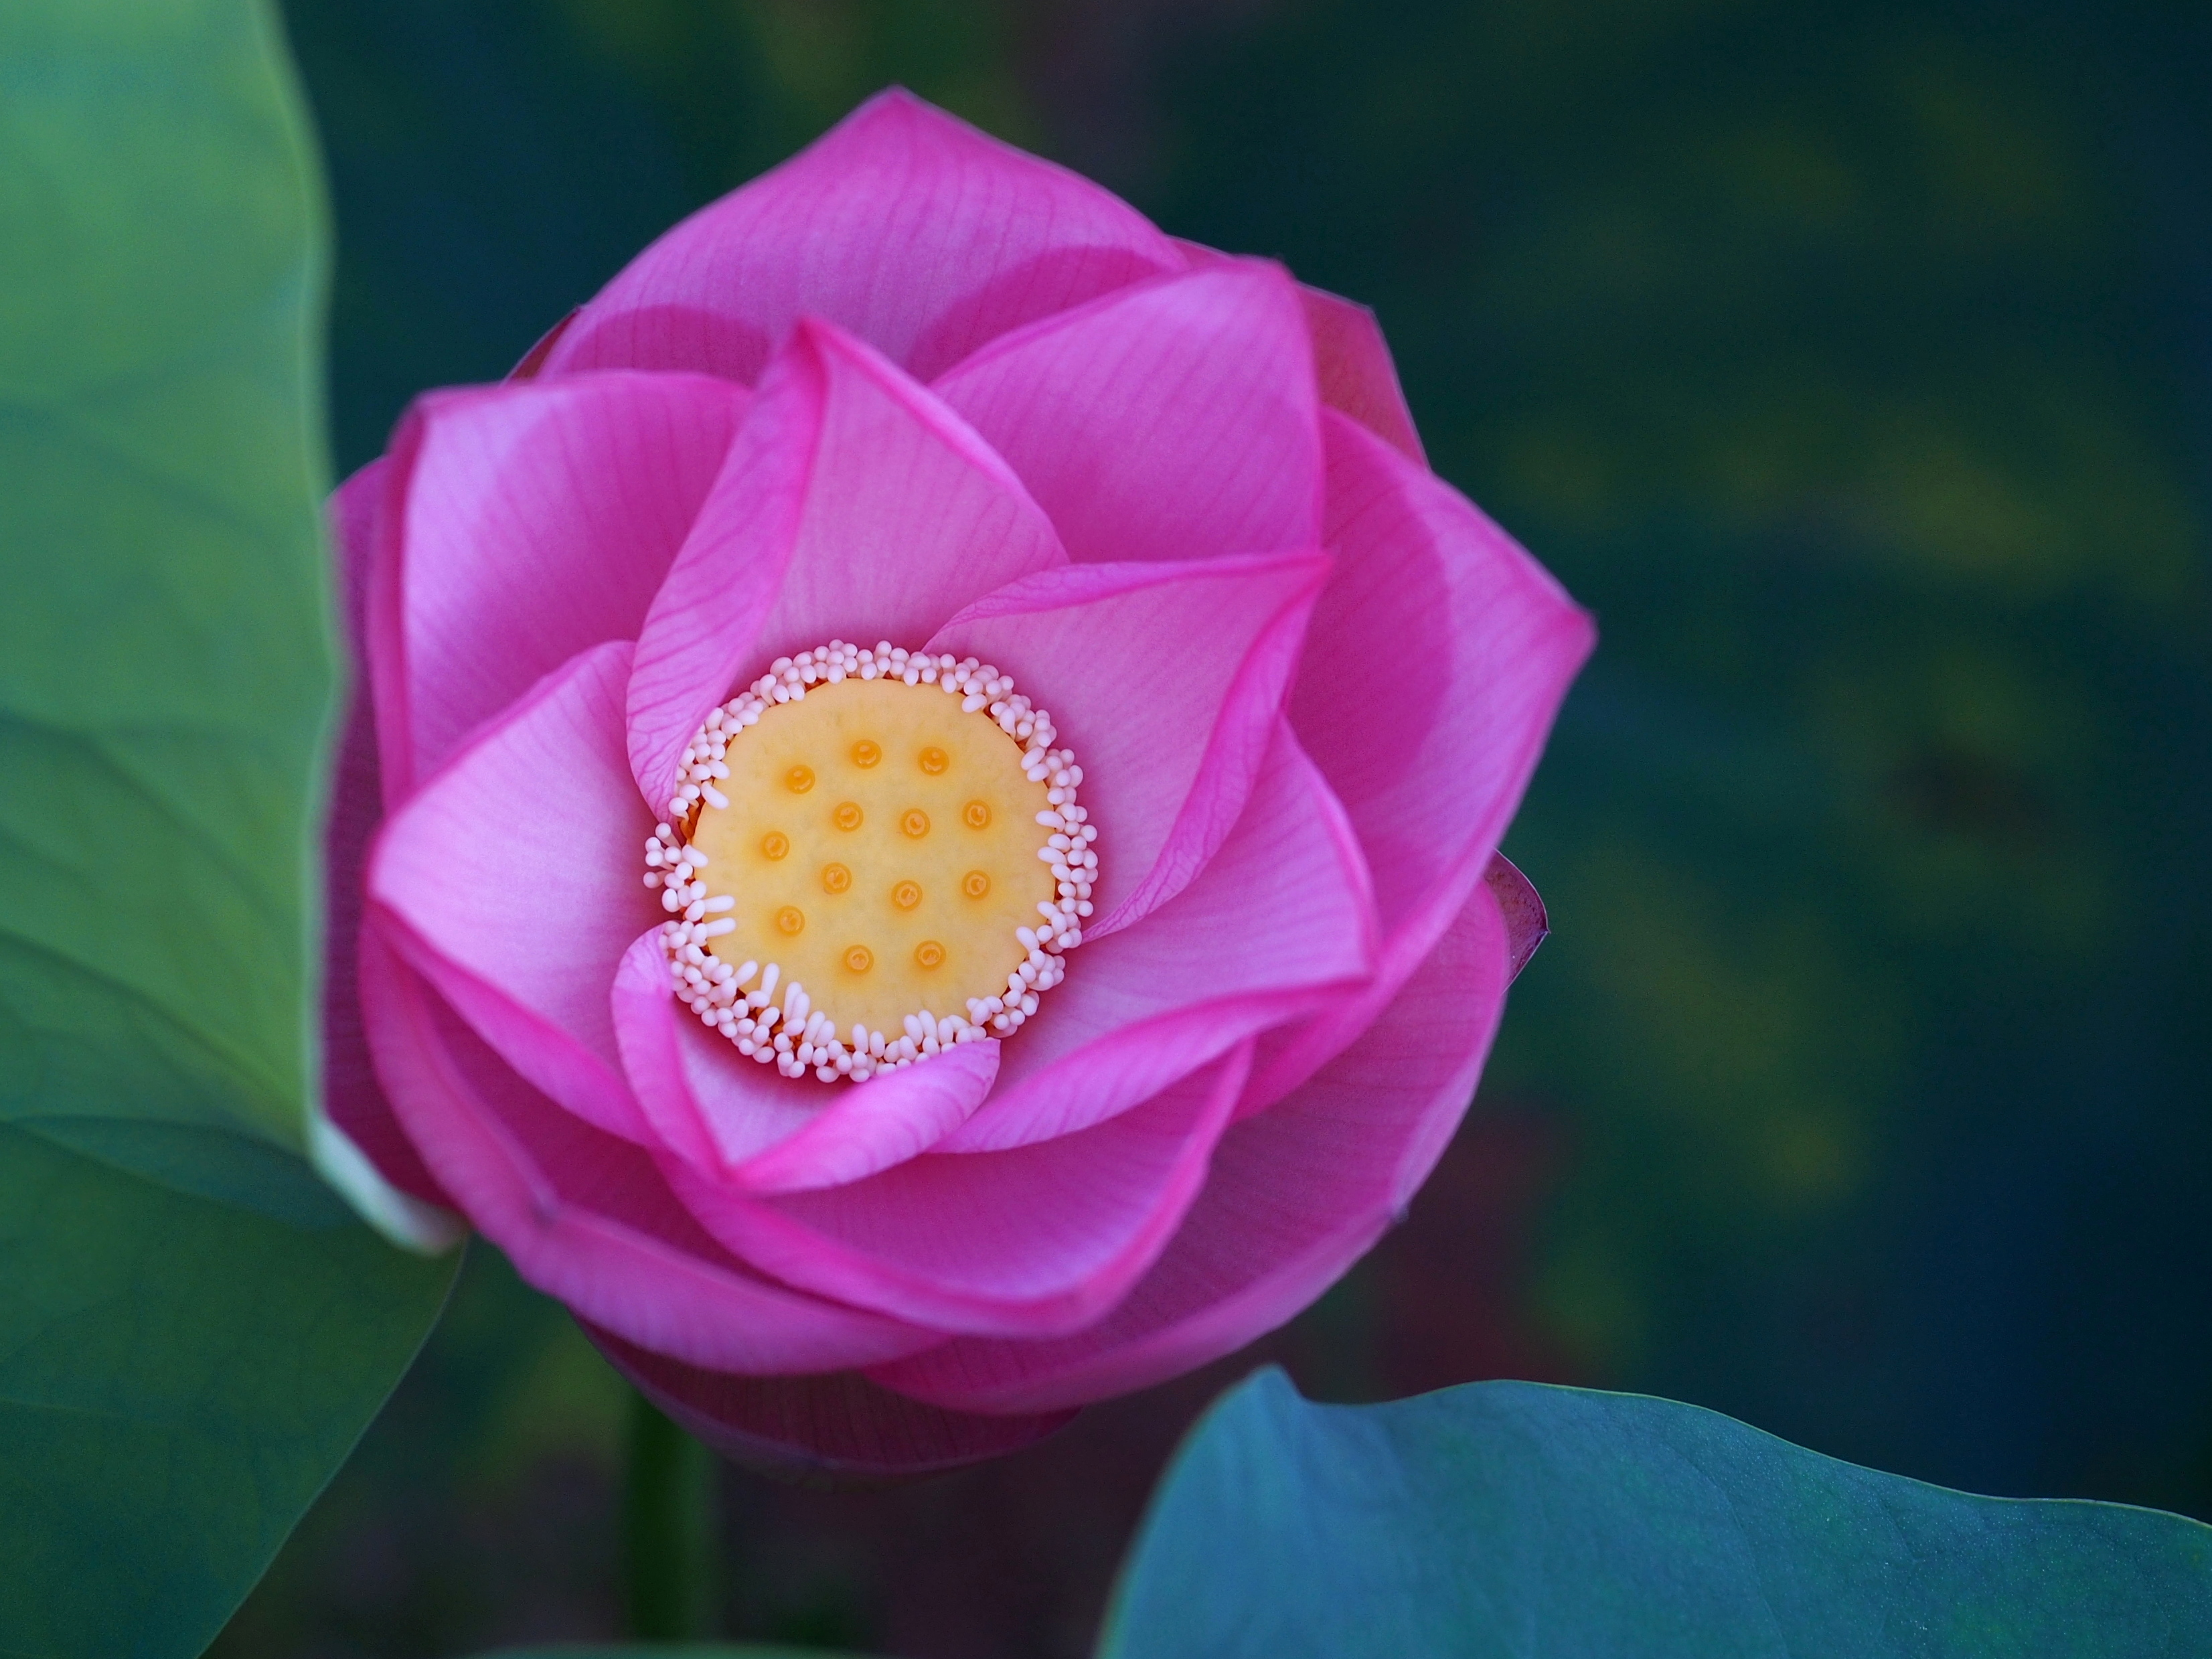 Картинка про красивый цветок, лотос · бесплатная фотография